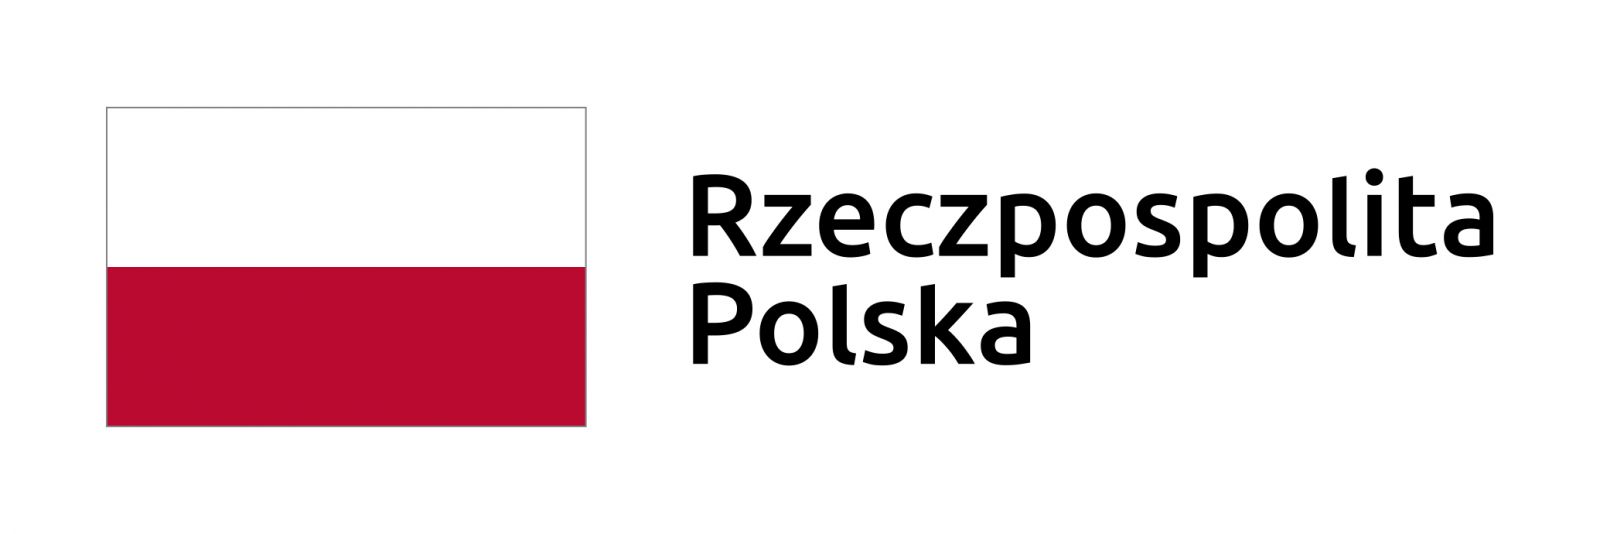 flaga Polski w kolorach biało-czerwonym, napis Rzeczpospolita Polska